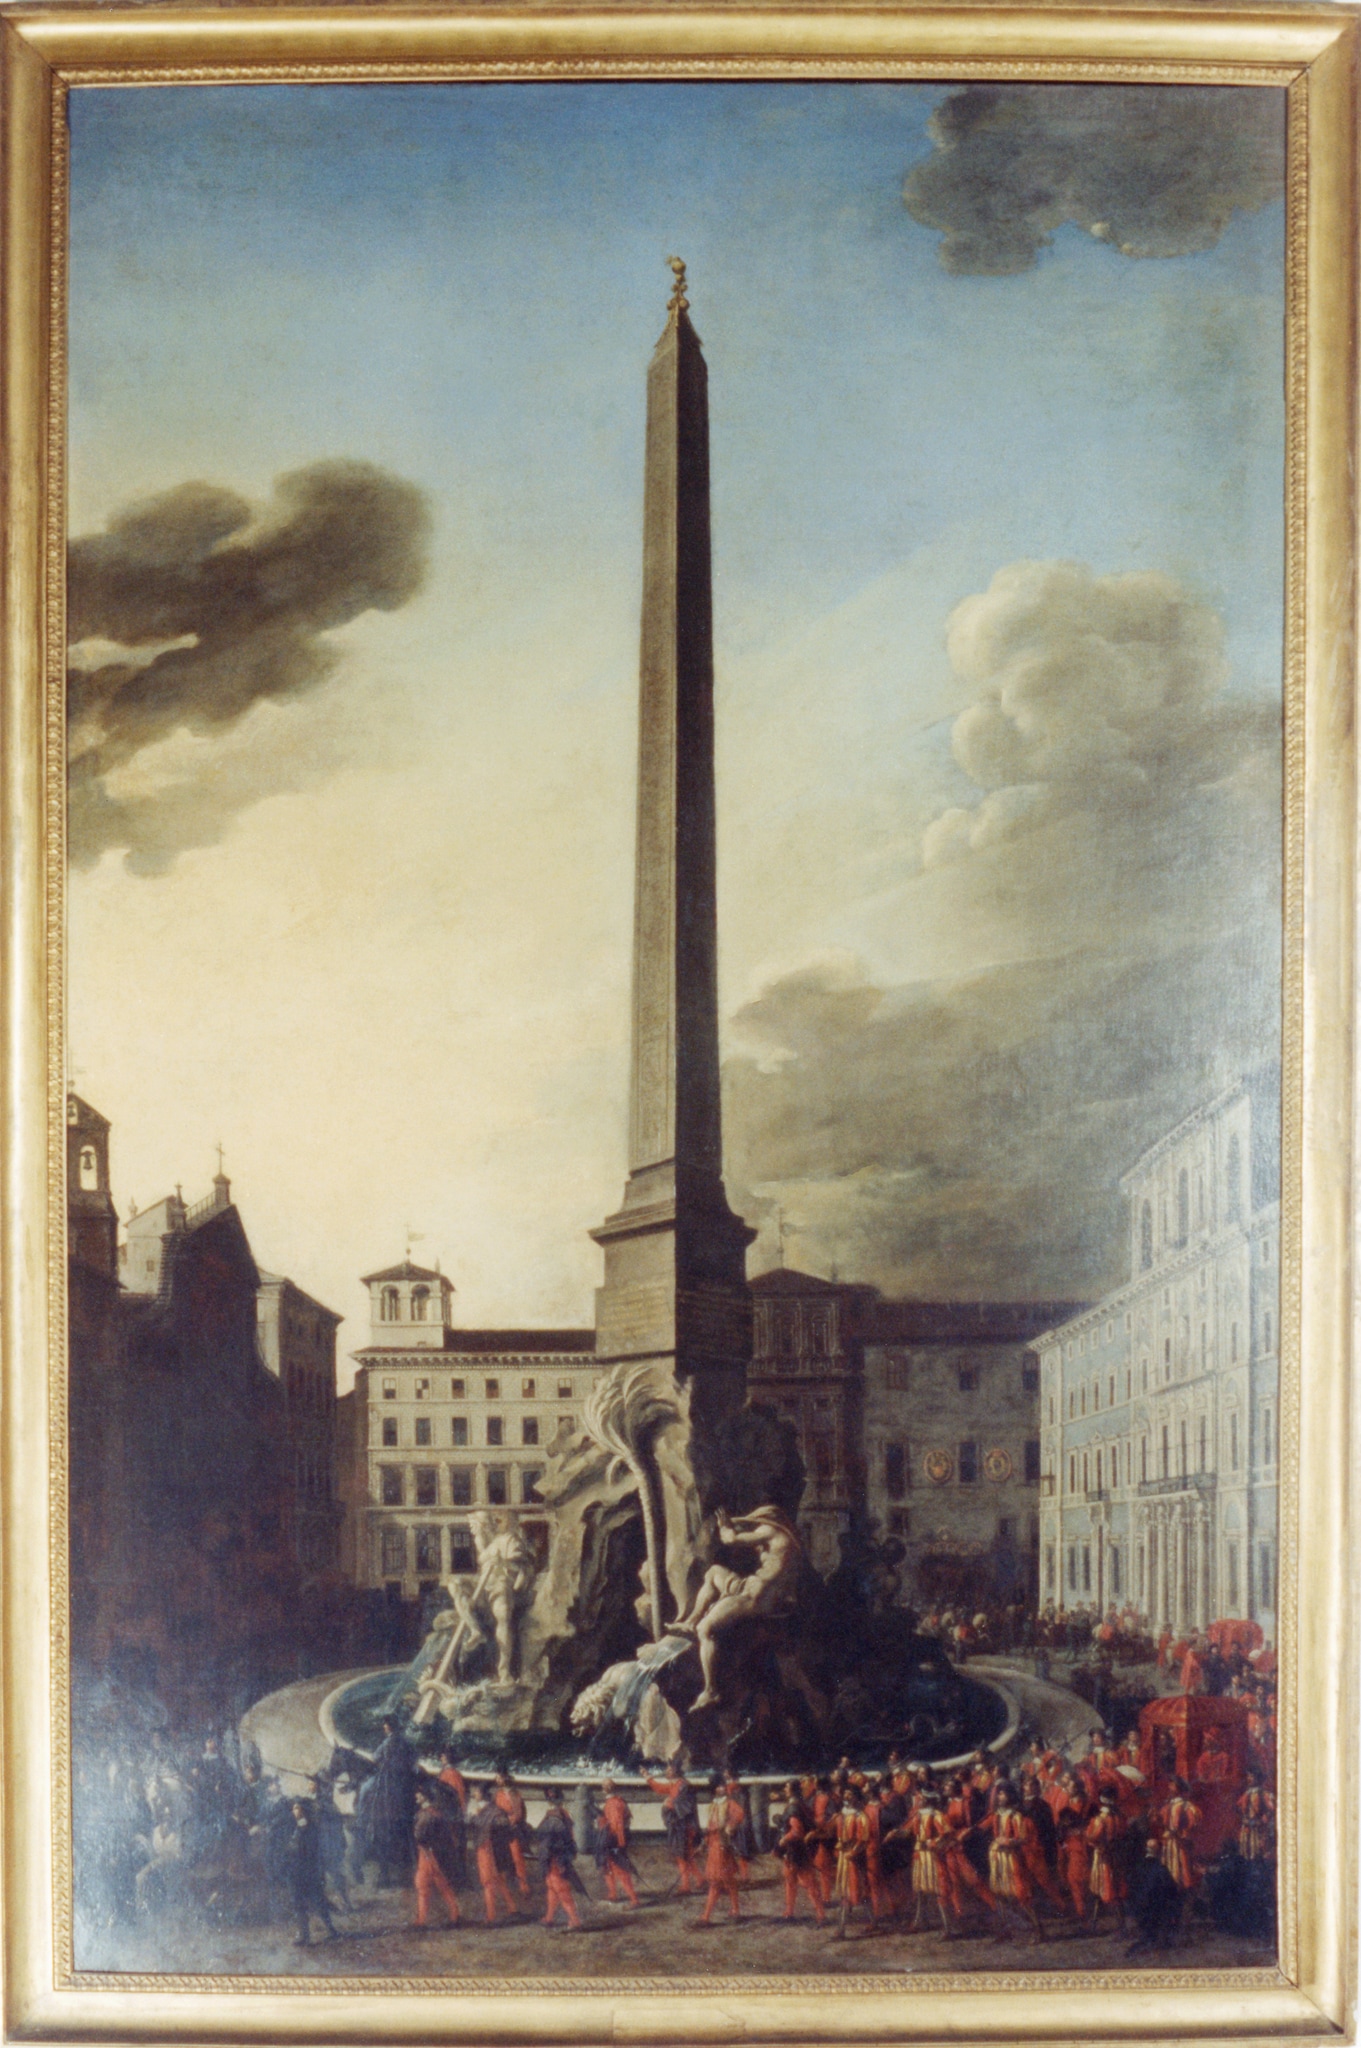 Filippo Gagliardi (Roma 1606/1608 - 1659), attribuito "Visita di Innocenzo X alla Fontana dei Fiumi in Piazza Navona", 1651 circa. Olio su tela, 285 x 187 cm 